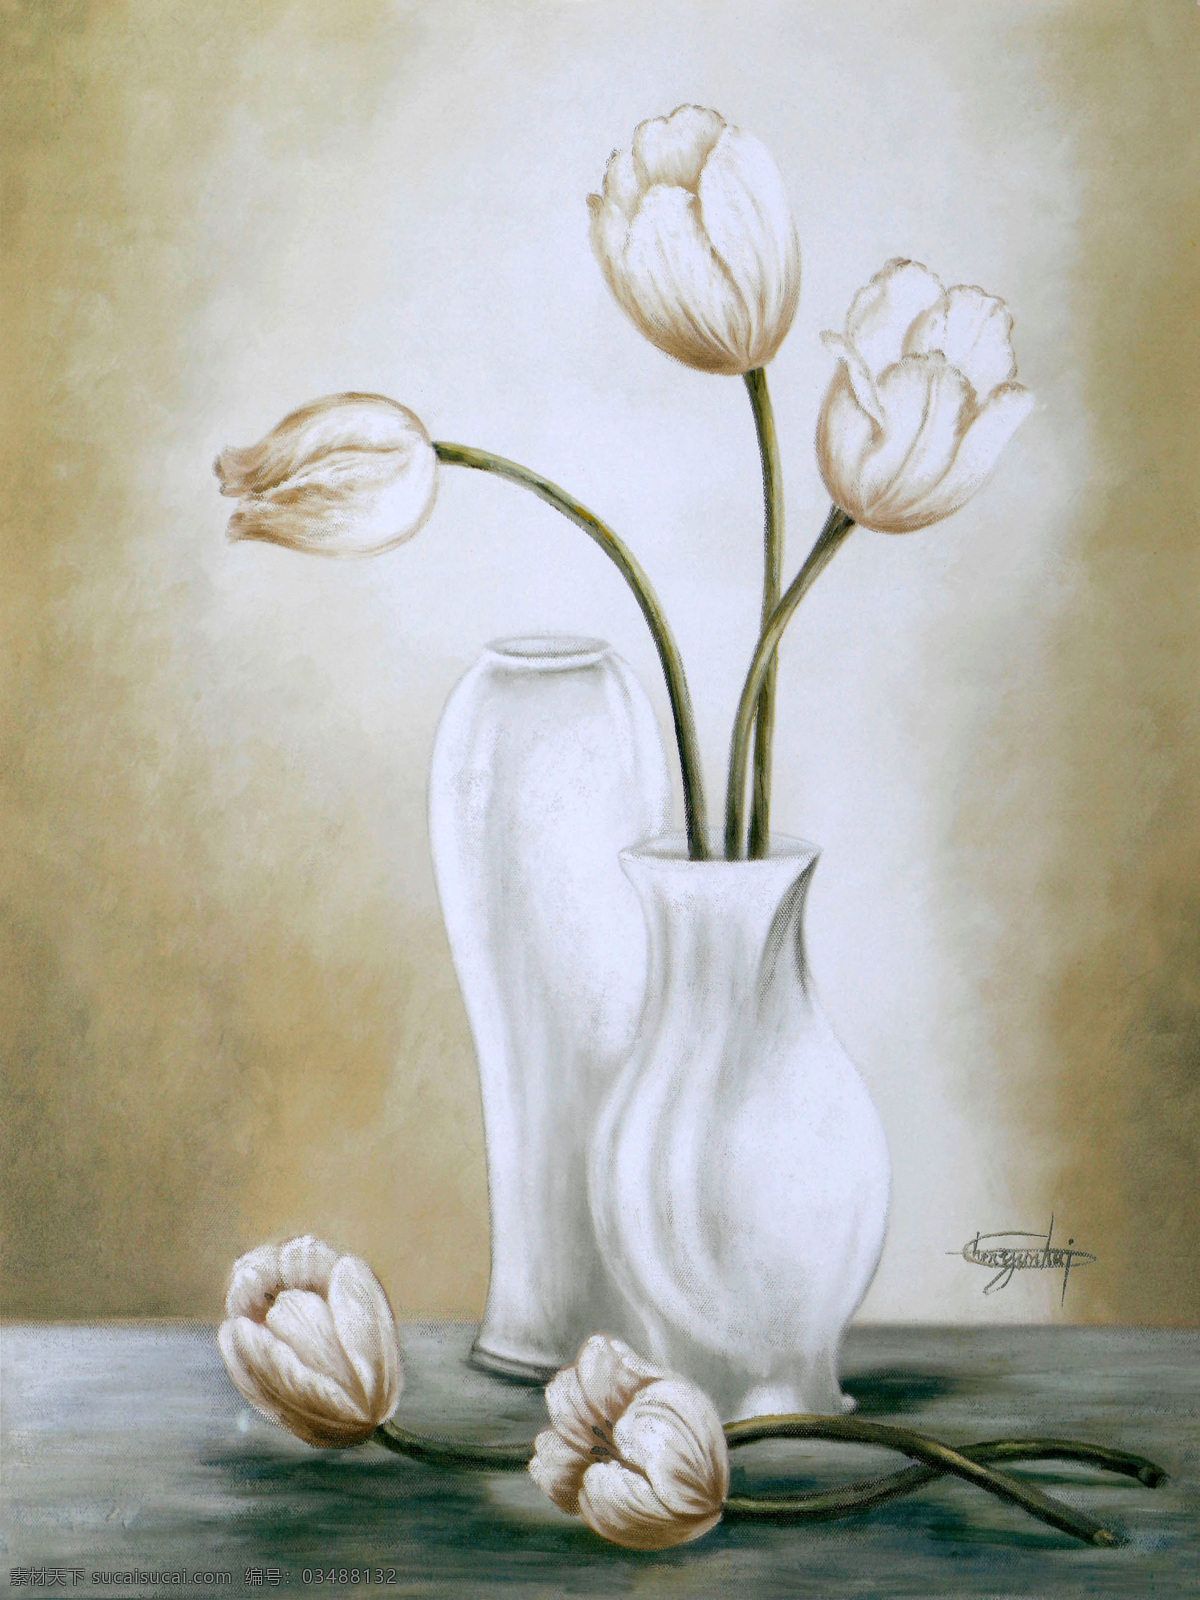 白色 花瓶 鲜花 油画 花朵 绘画 艺术 写生 水墨 花草 画 水墨画 风景 其他艺术 文化艺术 灰色